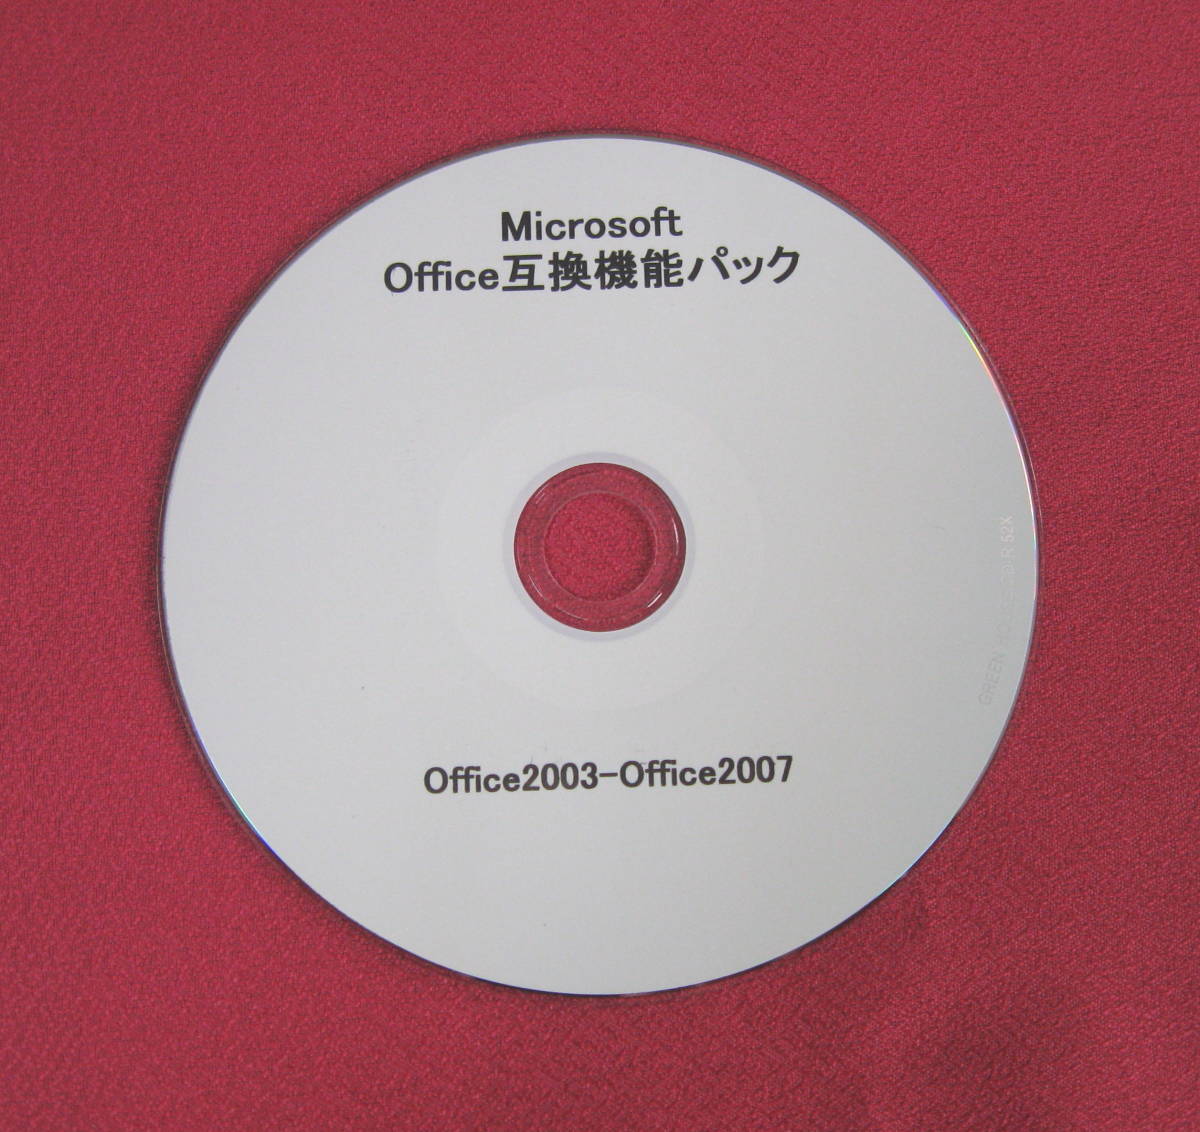 ◎便利な MicrosoftOffice互換機能パック・Office2007(2010/2013他)などのファイルをOffice2003などで利用できる◎◎◎ ◎ ◎_画像1